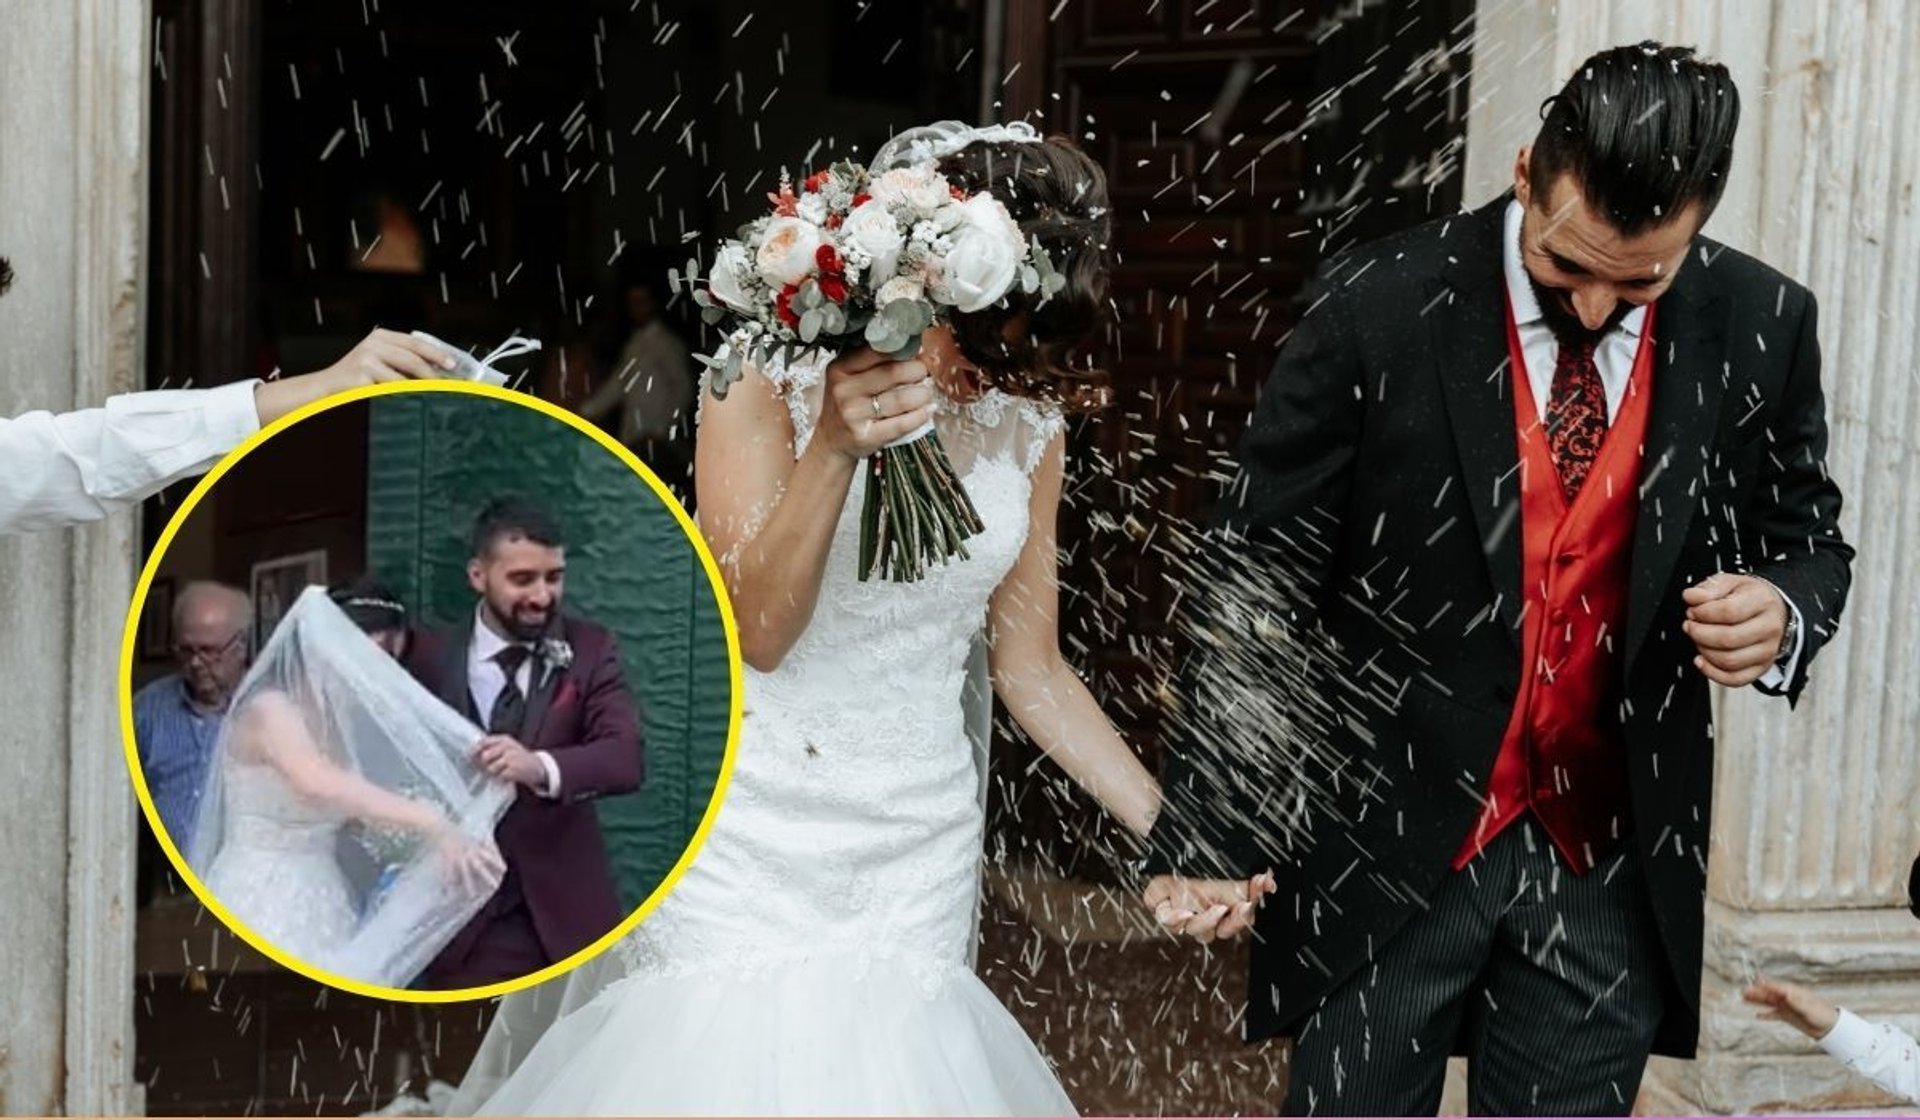 Ślubne tradycje czasami nie idą zgodnie z planem, fot. Canva/Xrobak, Getty Images, TikTok/danaenaildesigner